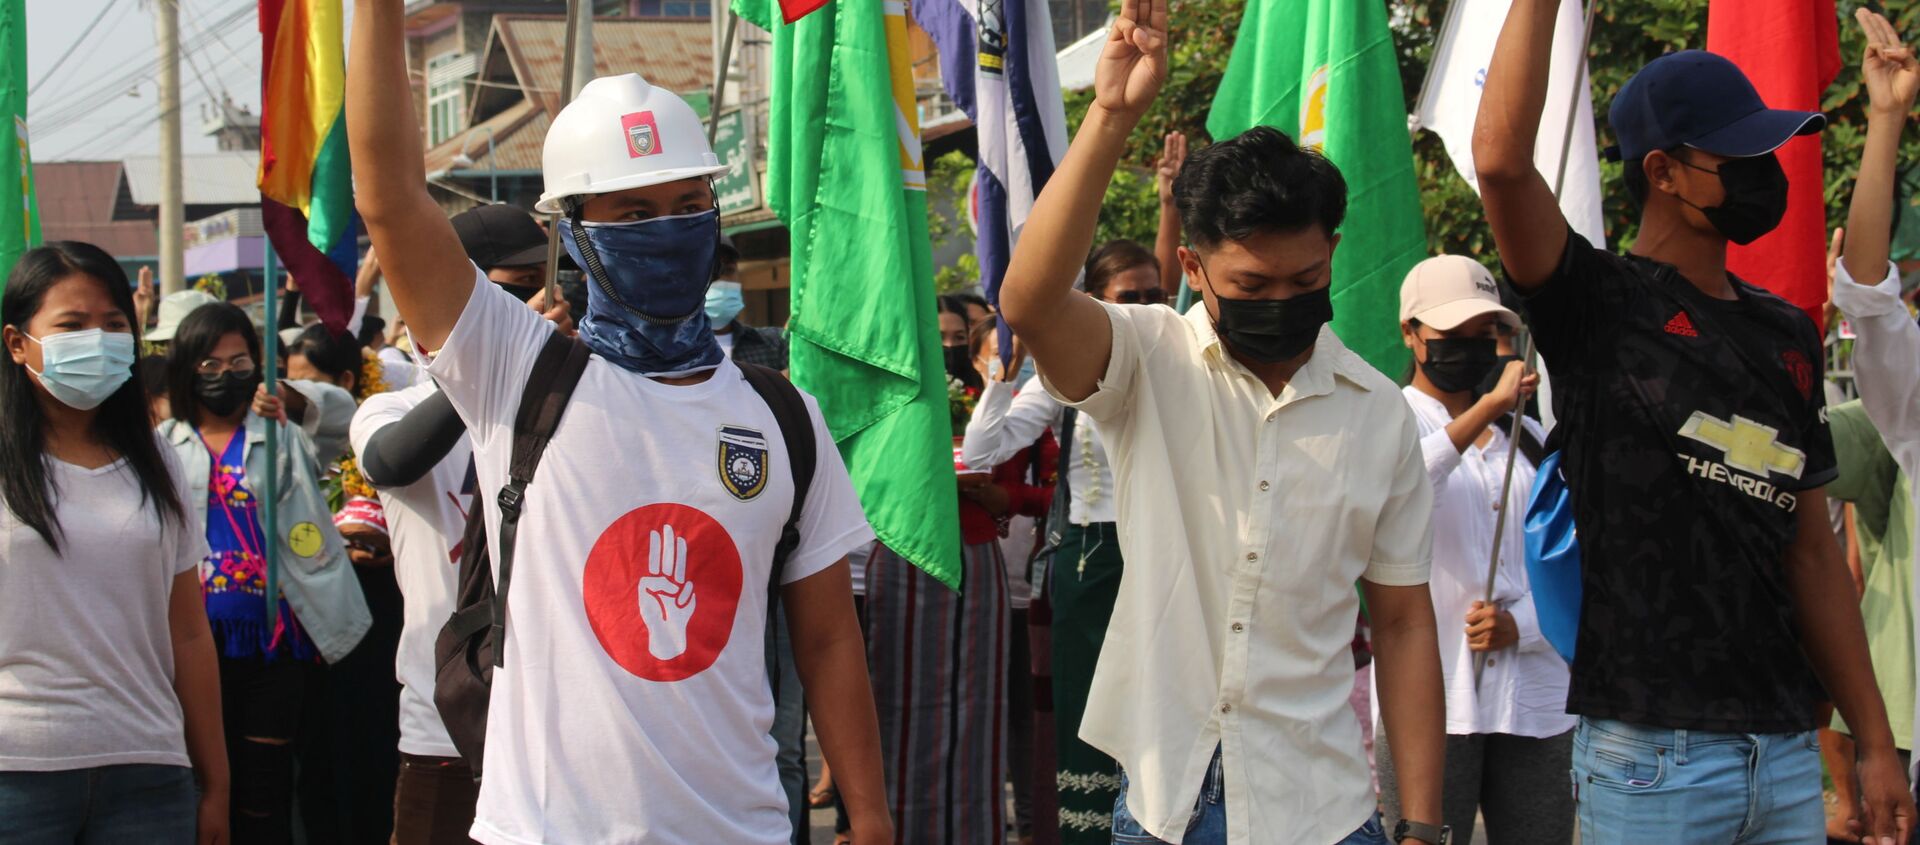 Những người tham gia biểu tình phản đối cuộc đảo chính quân sự ở Myanmar. - Sputnik Việt Nam, 1920, 13.04.2021